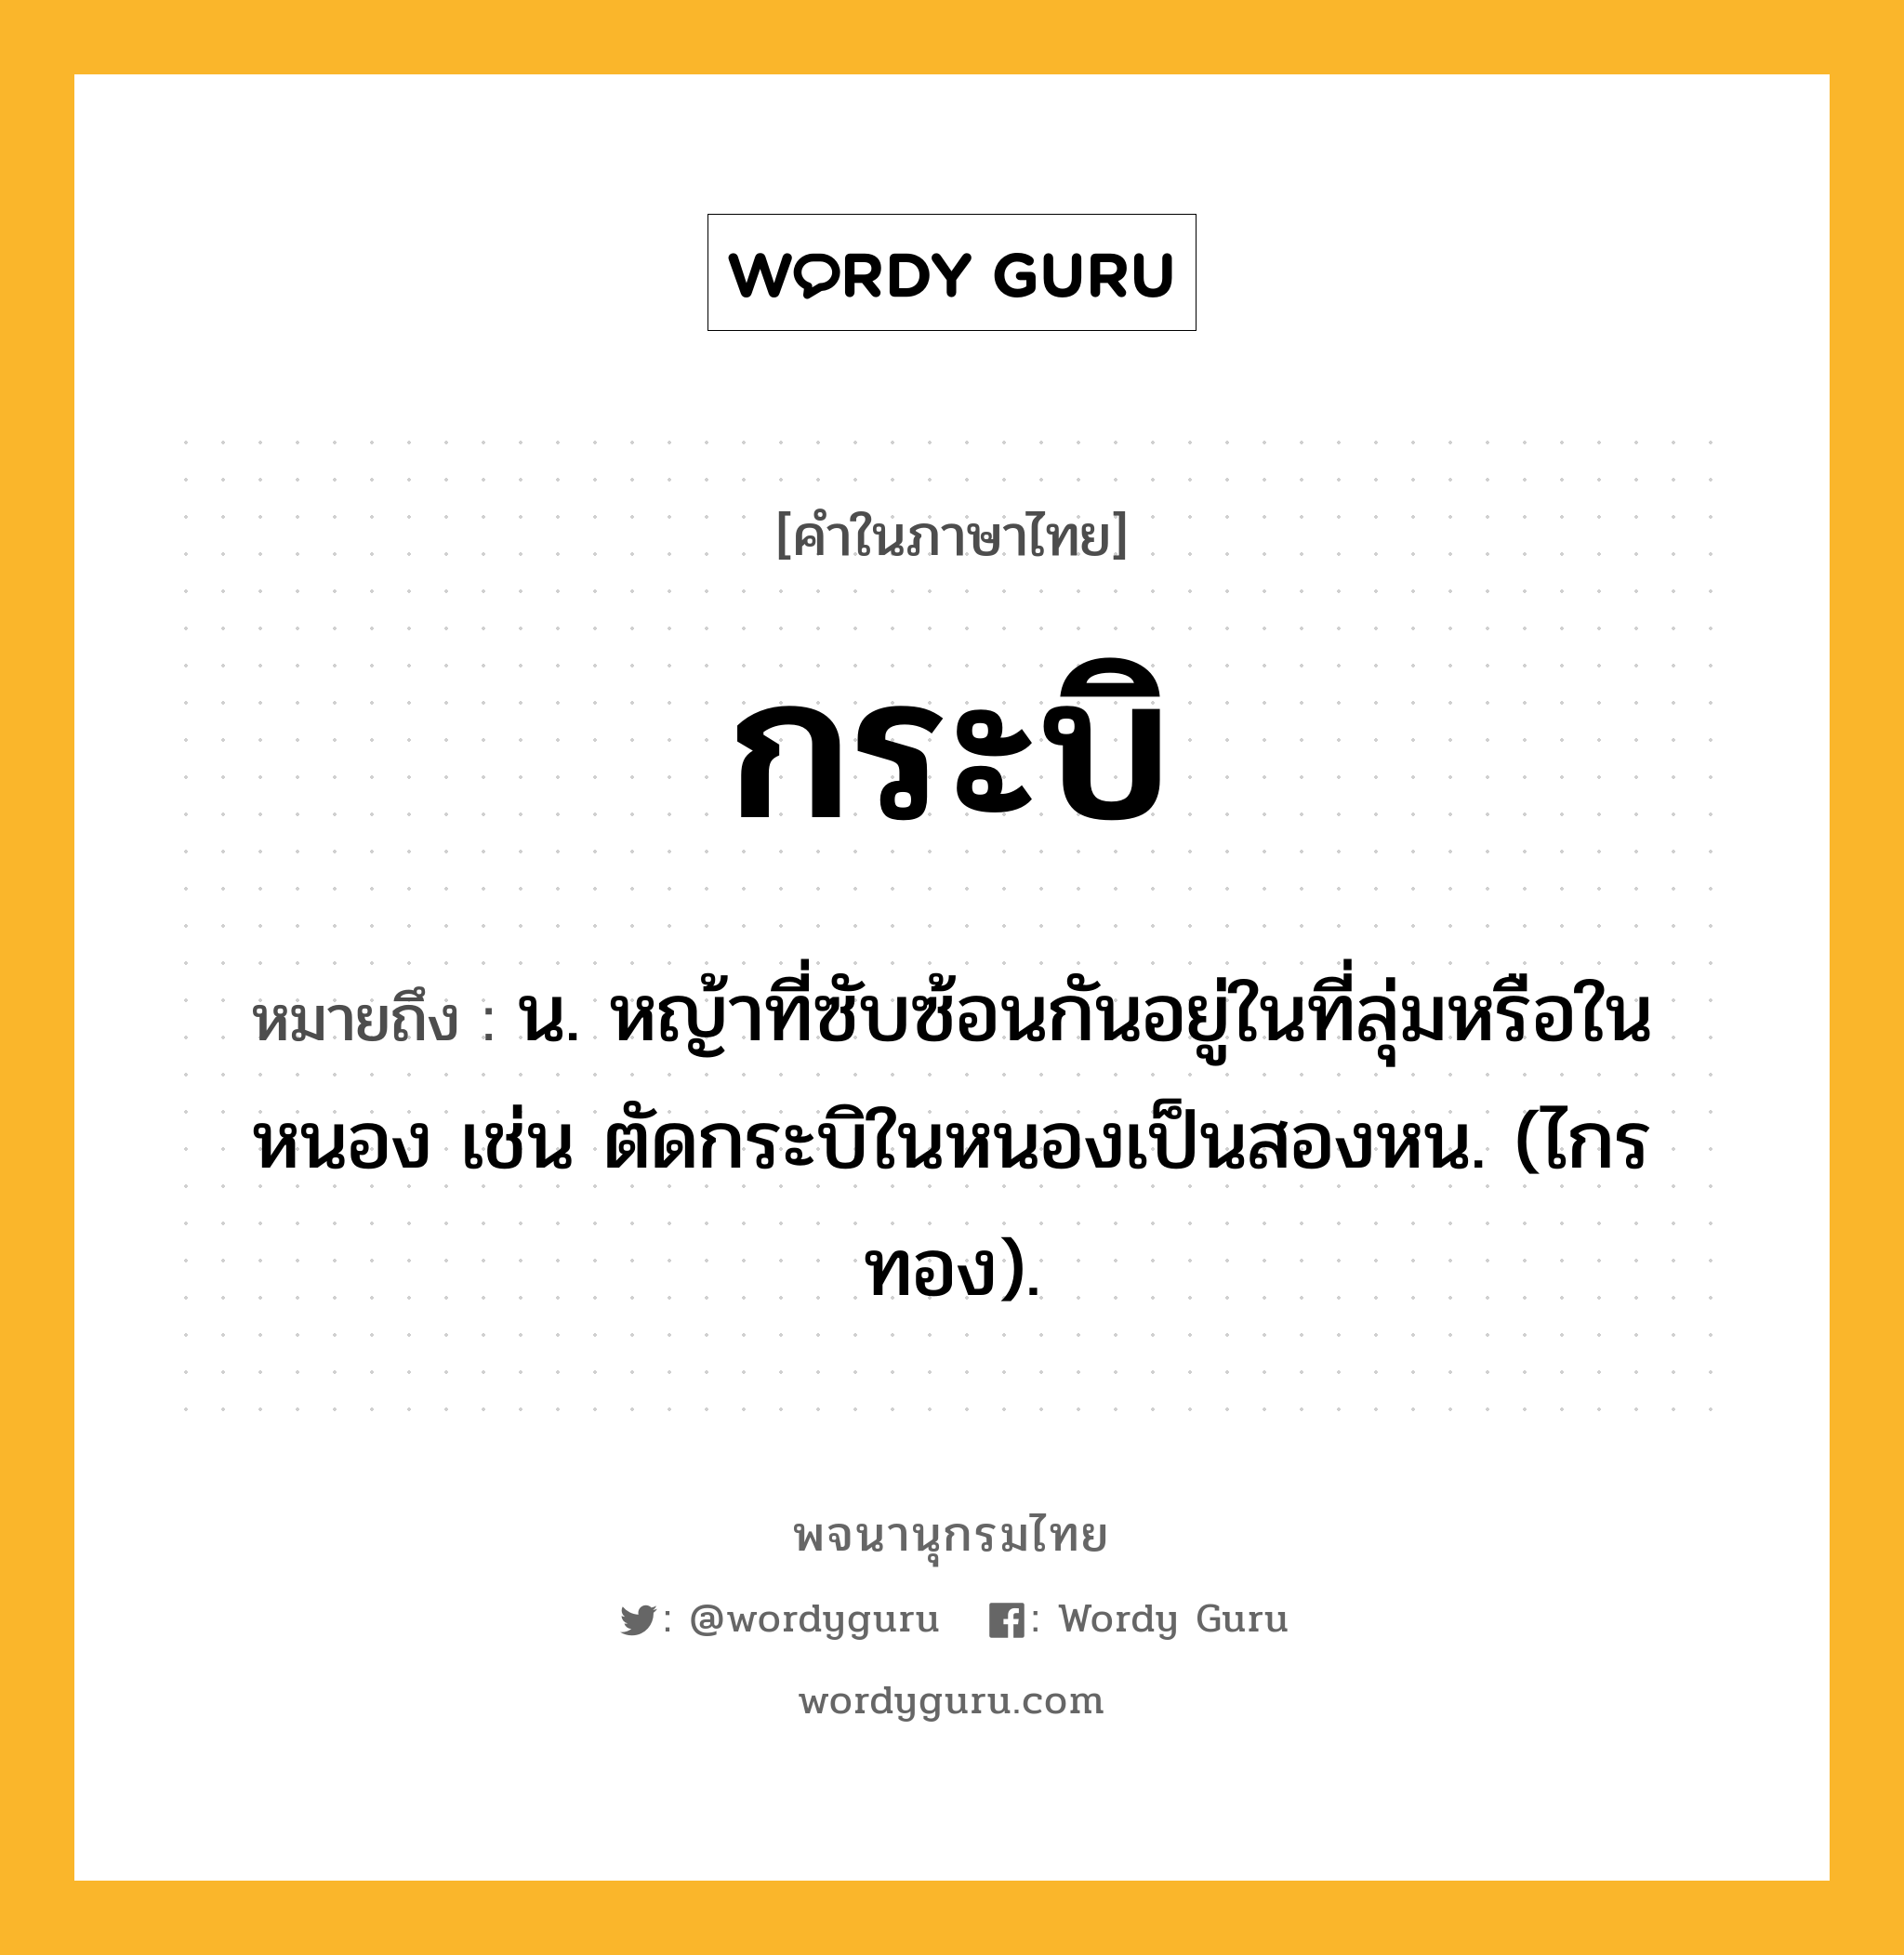 กระบิ ความหมาย หมายถึงอะไร?, คำในภาษาไทย กระบิ หมายถึง น. หญ้าที่ซับซ้อนกันอยู่ในที่ลุ่มหรือในหนอง เช่น ตัดกระบิในหนองเป็นสองหน. (ไกรทอง).